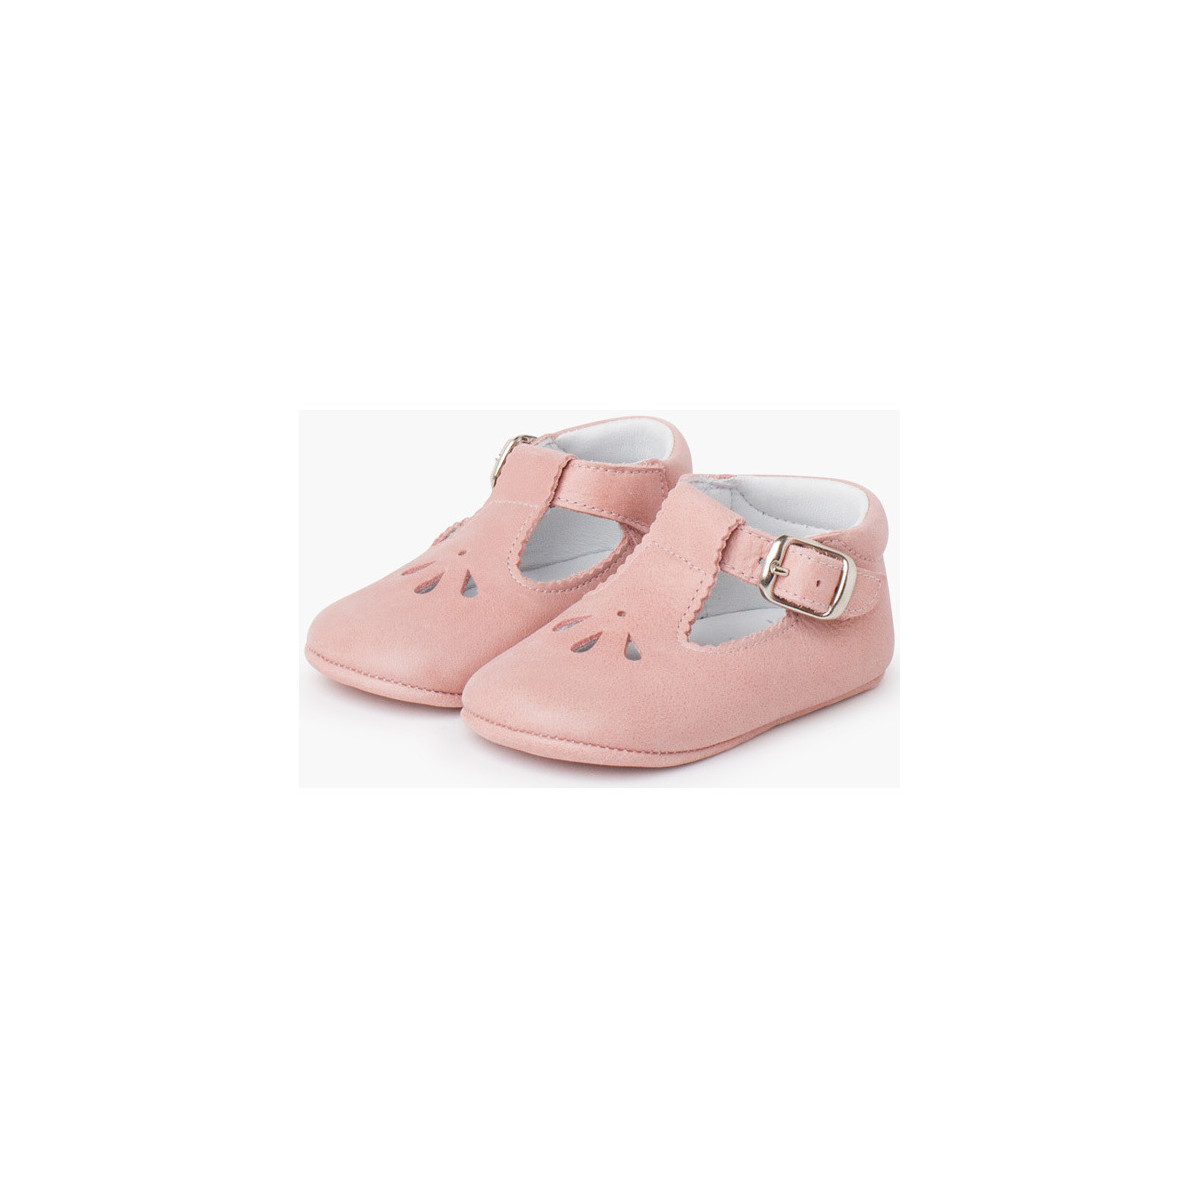 Pisamonas Rose Chaussures salomé bébé en cuir avec détail perforé X6VUidIo